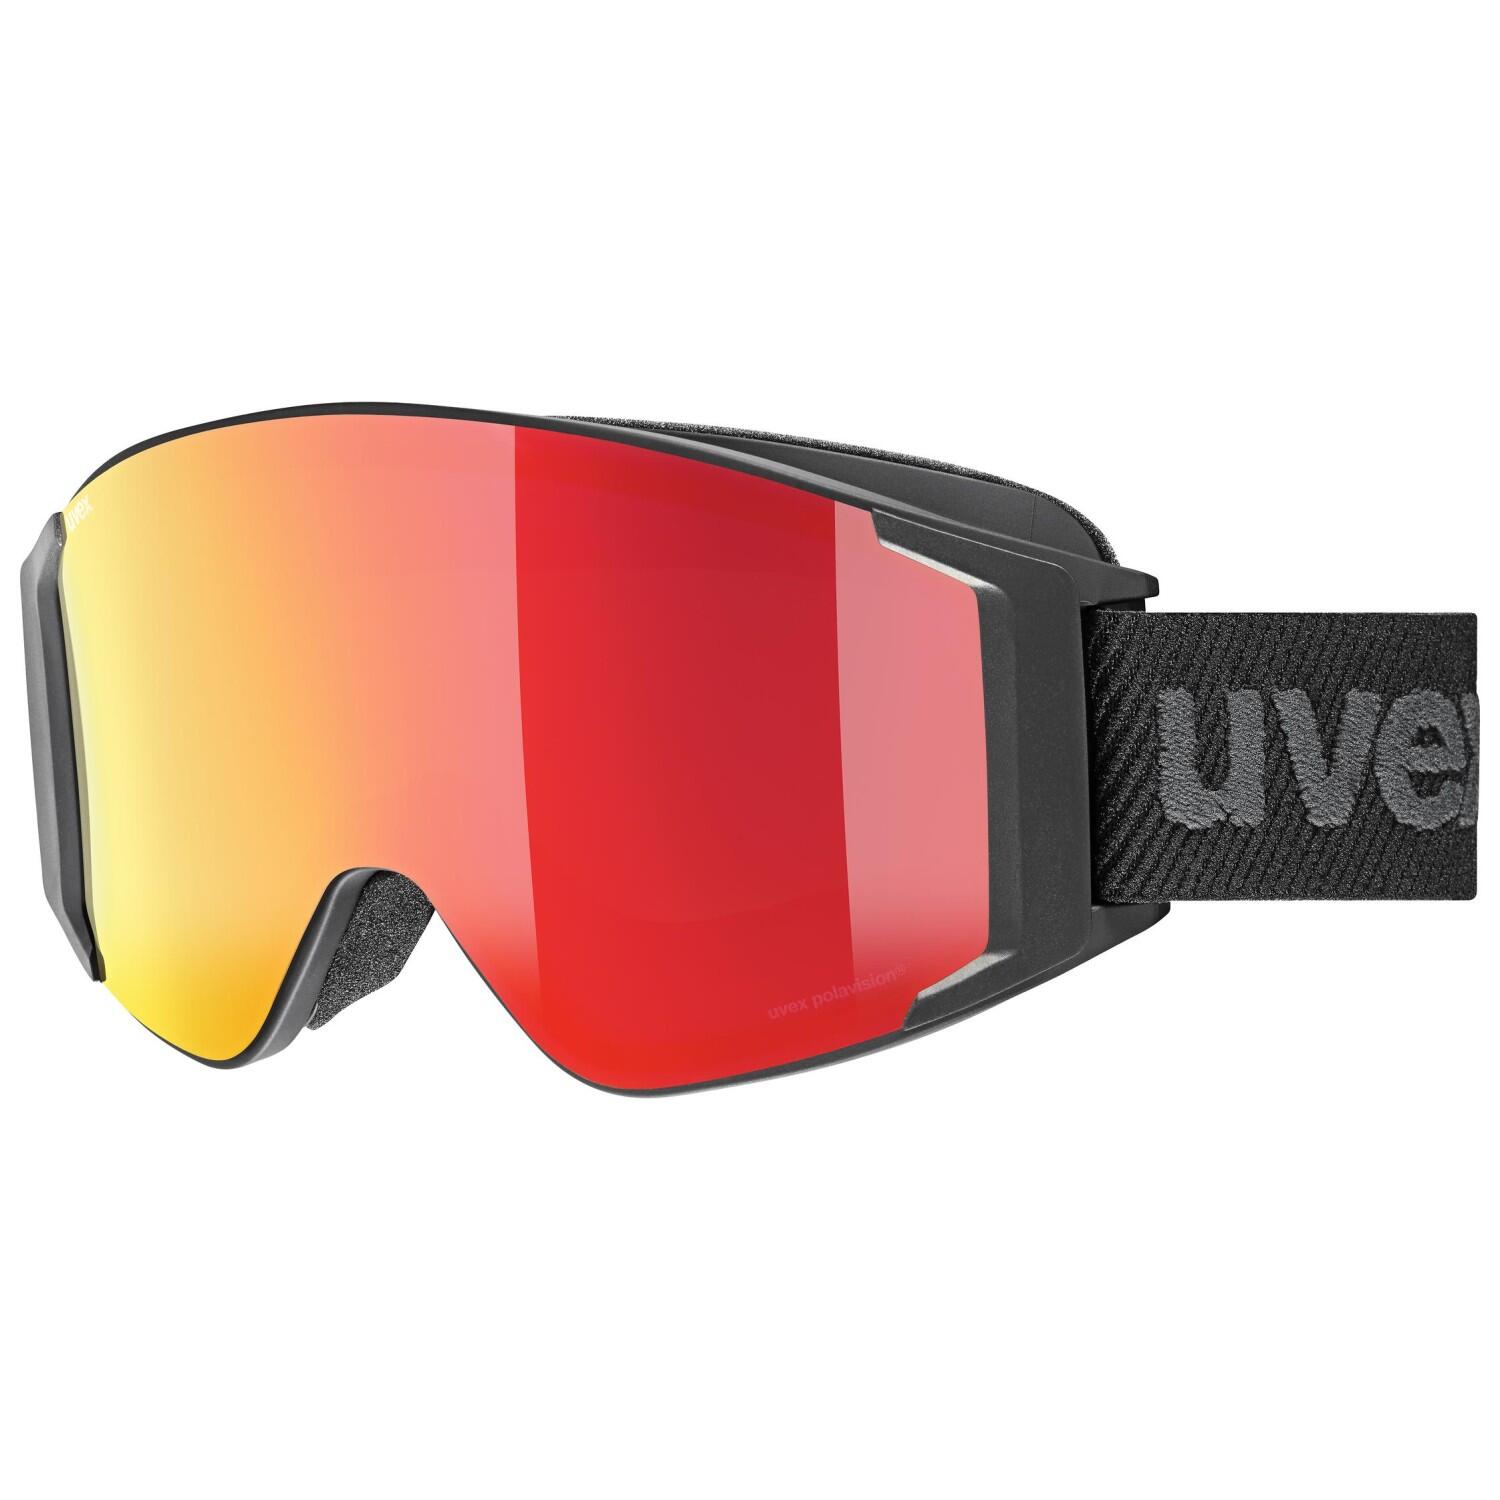 uvex g.gl 3000 Take Off Polavision Brillenträgerbrille (2130 schwarz, mirror red/polavision/clear (S1+S3)) von uvex